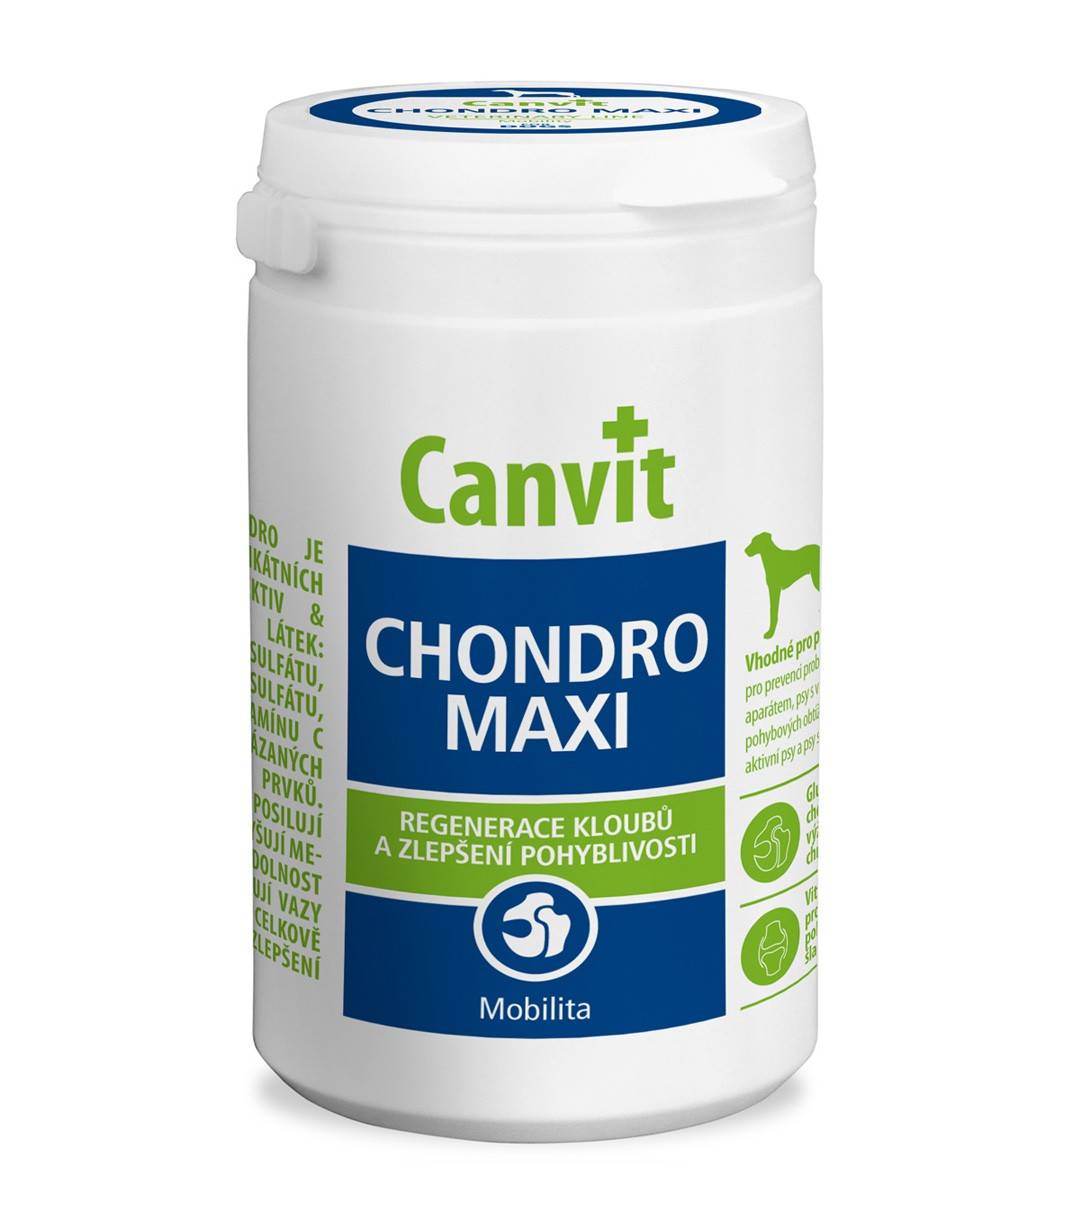 CANVIT  CHONDRO MAXI – витаминный комплекс для  регенерации и улучшения подвижности суставов у собак больших пород